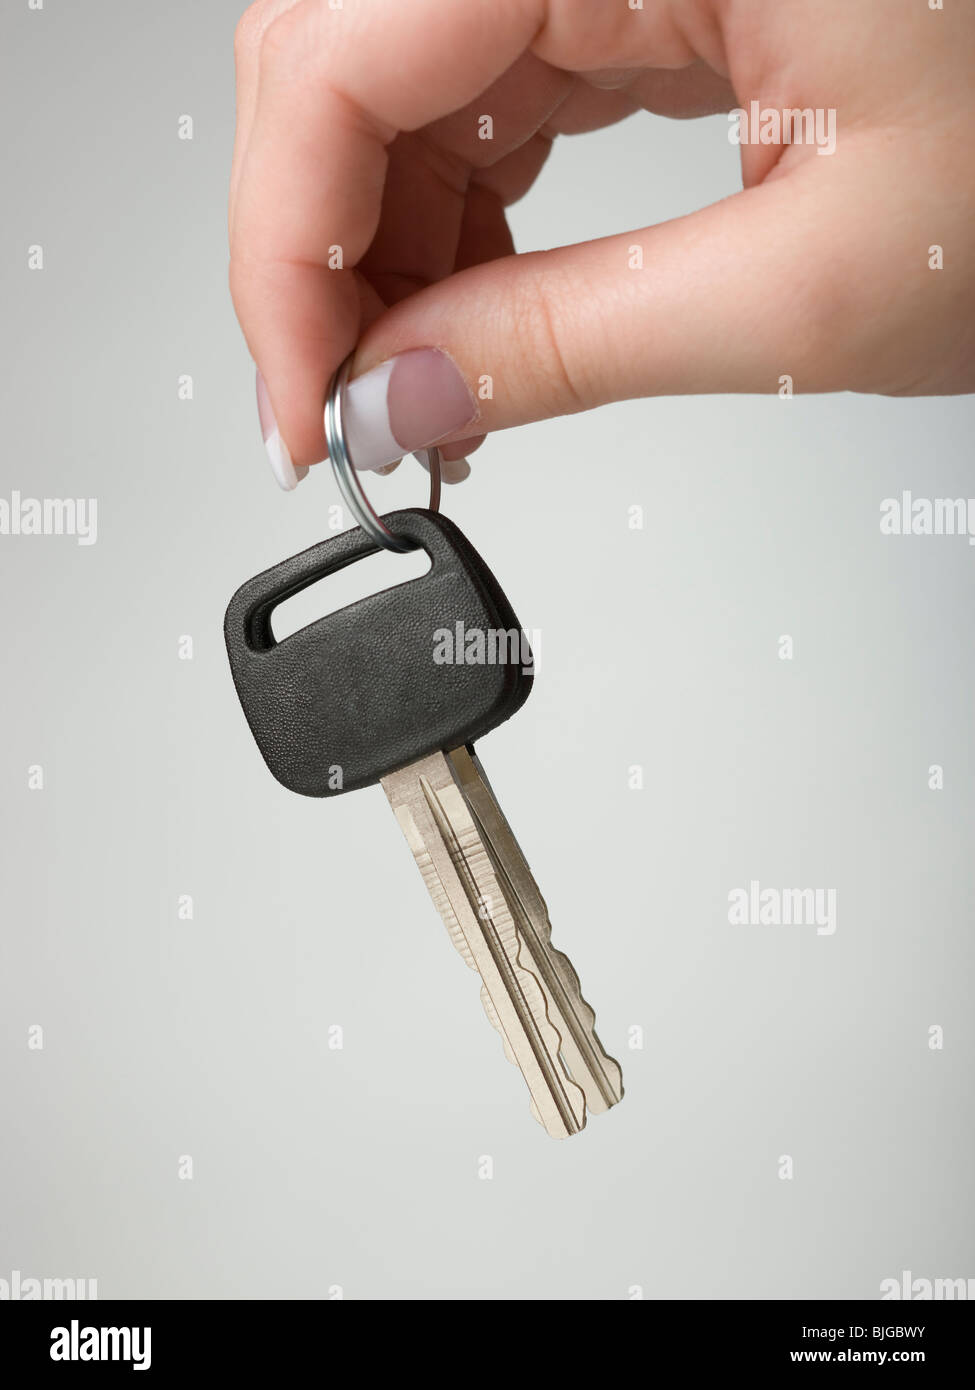 Hand holding keys Stock Photo